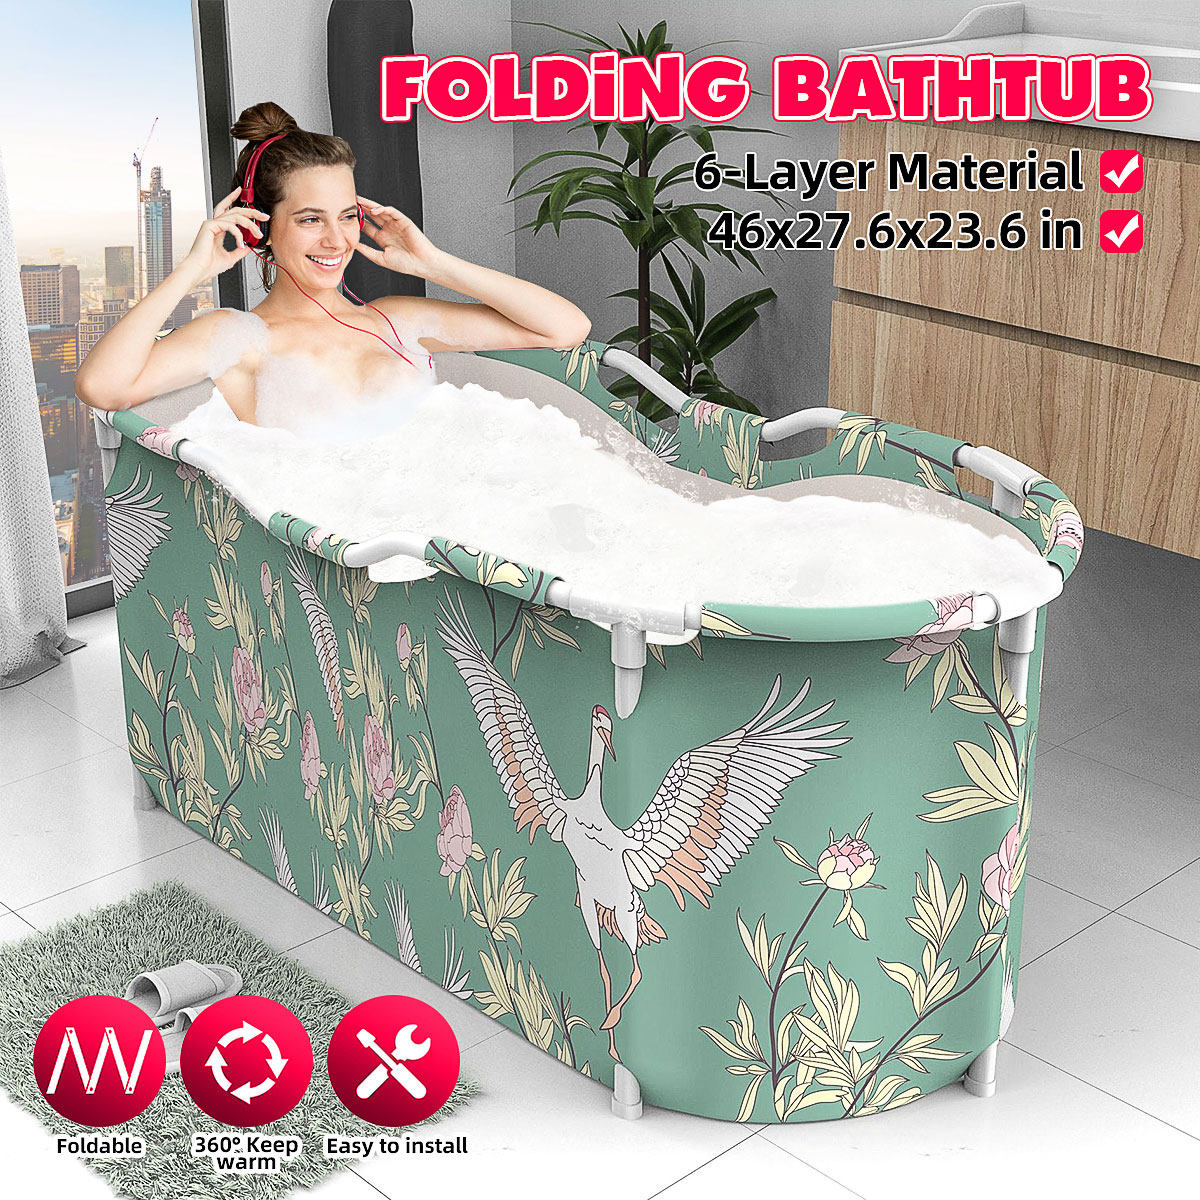 46x27.6x23.6 inch Portable Bathtub Folding Water Tub Indoor Outdoor Room Adult Spa Foldable Bath Bucket 30